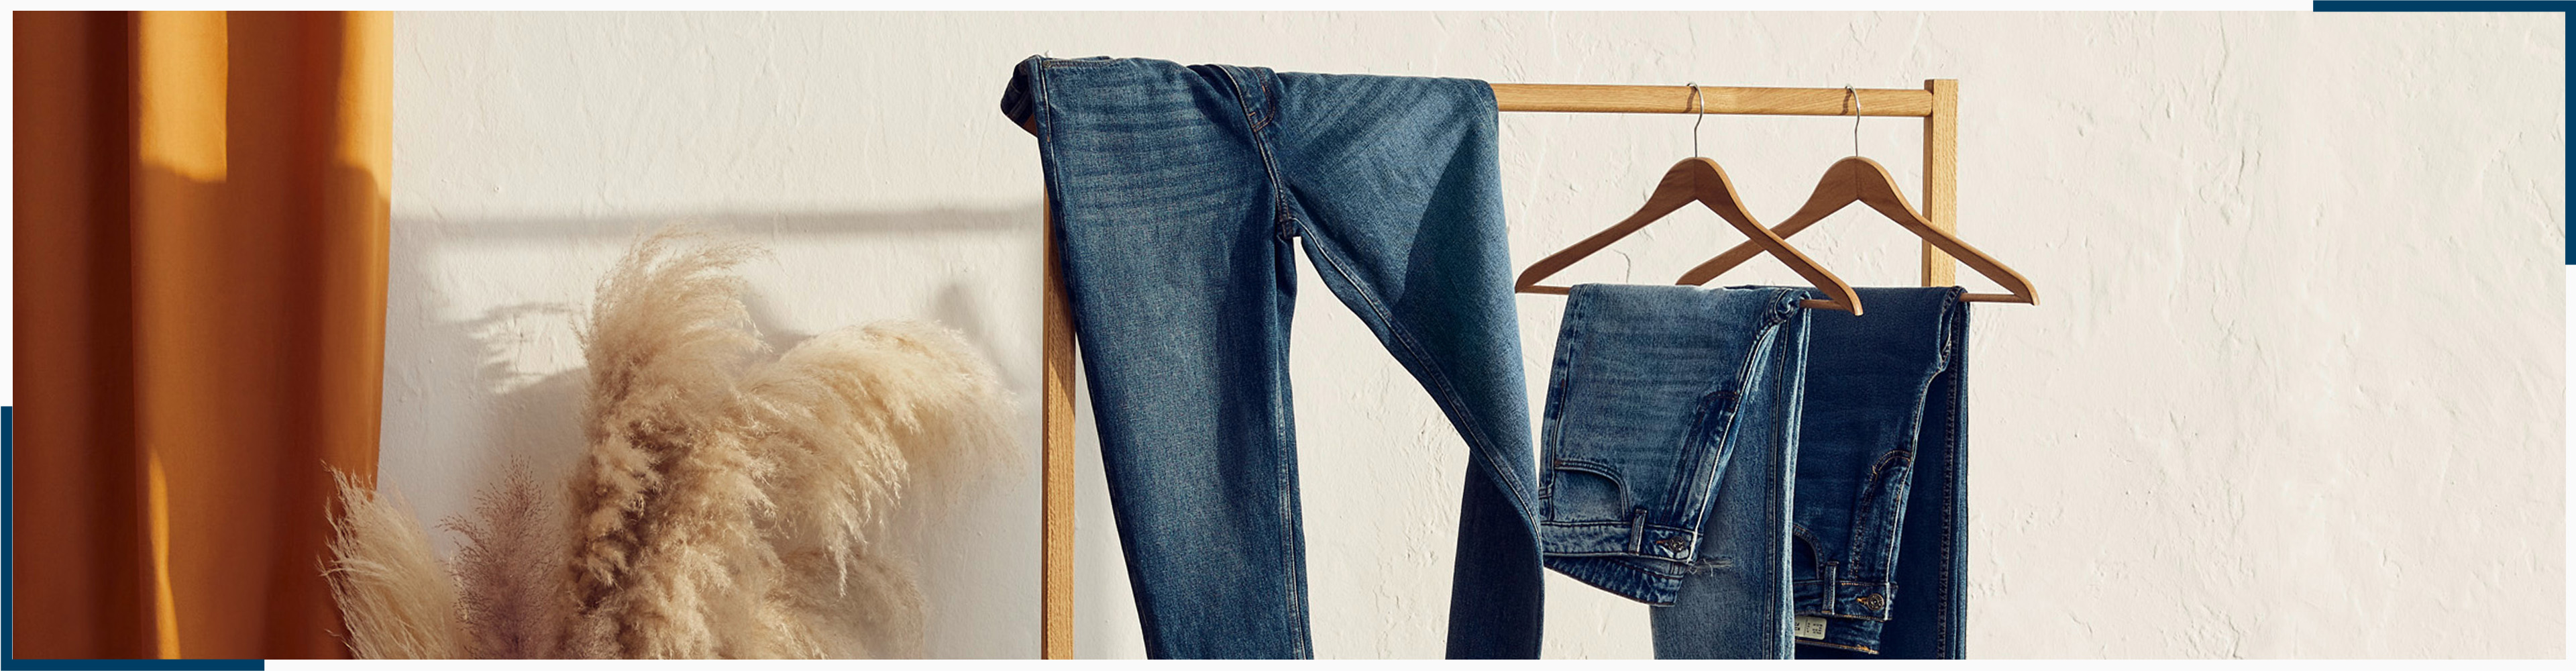 Pflegetipps – so behandelst du deine Jeans richtig